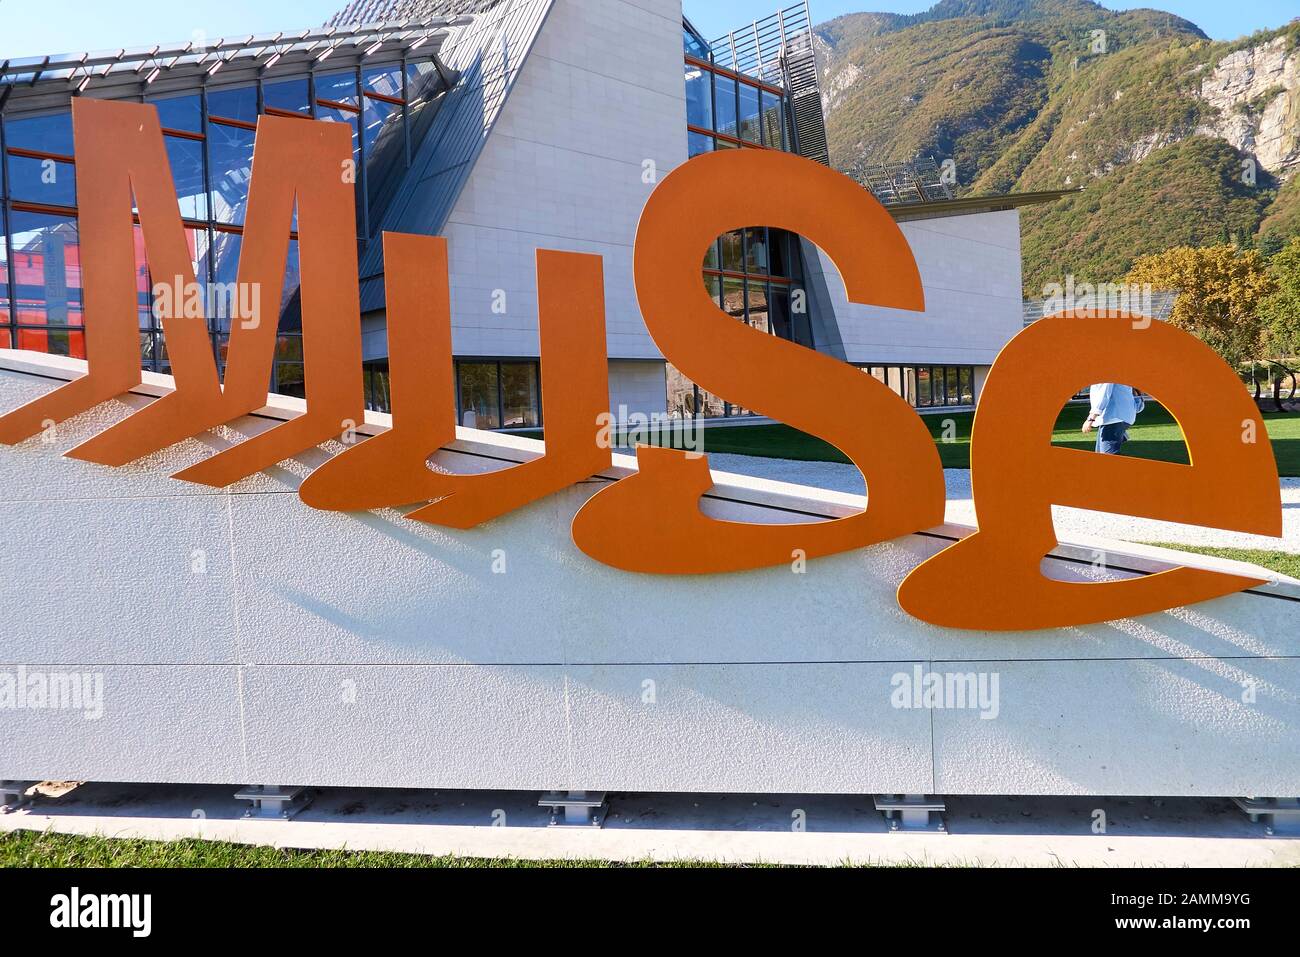 Muse - Museum für Wissenschaft in Trient, MUSÉE Museo delle Scienze, Corso del Lavoro e della Scienza, 3, 38122 Trient, Italien, das Museum basiert auf den Fundamenten des ehemaligen Museo Tridentino di Scienze Naturali, Das fünfstöckige Gebäude mit tropischem Gewächshaus wurde von dem berühmten Architekten Renzo Piano entworfen, das Energiekonzept wurde auch vorbildlich umgesetzt, nach dem anerkannten LEED-Zertifizierungsprozess erhielt es den GOLDGRAD.06.10.2016 [automatisierte Übersetzung] Stockfoto